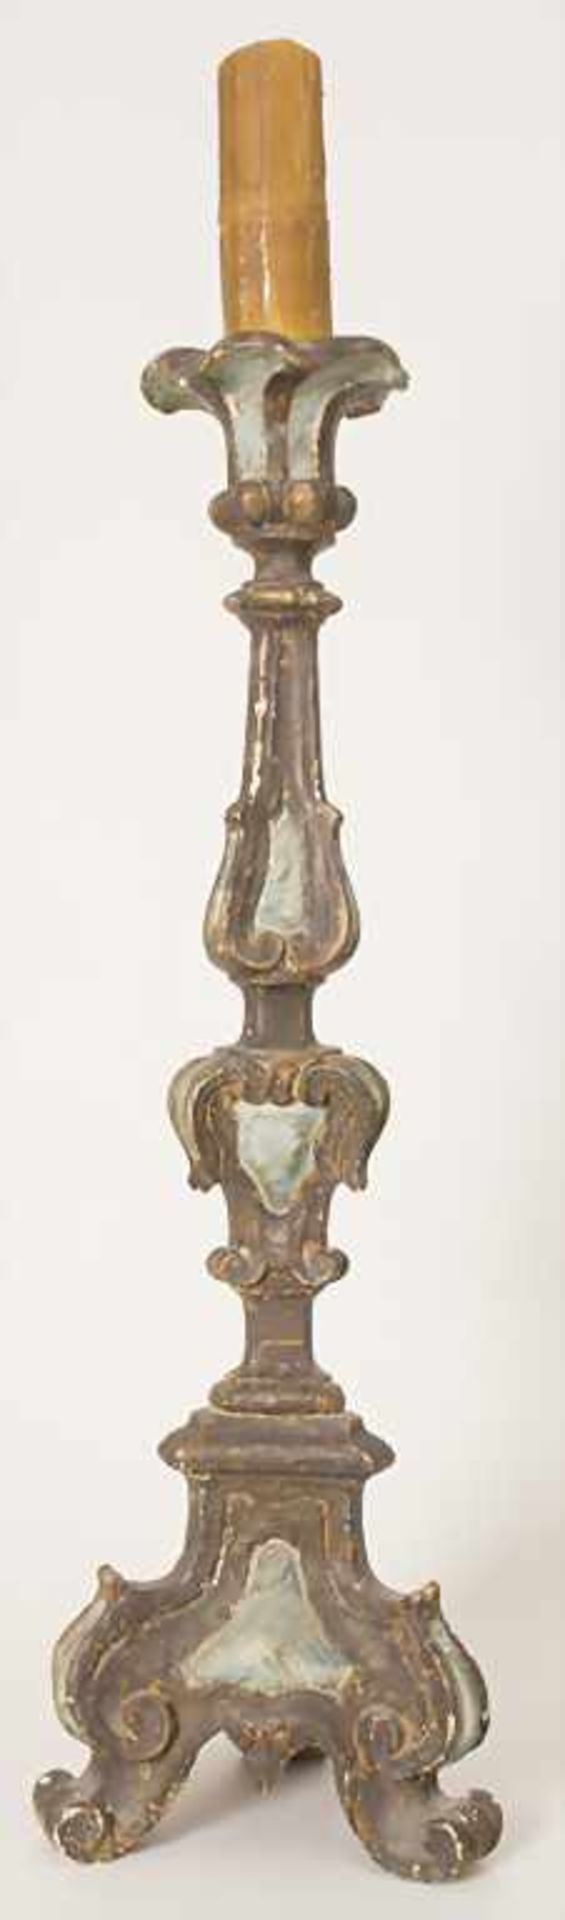 Altarleuchter / An altar candlestick, süddeutsch 18. Jh.Material: Holz, geschnitzt, farbig - Bild 3 aus 13